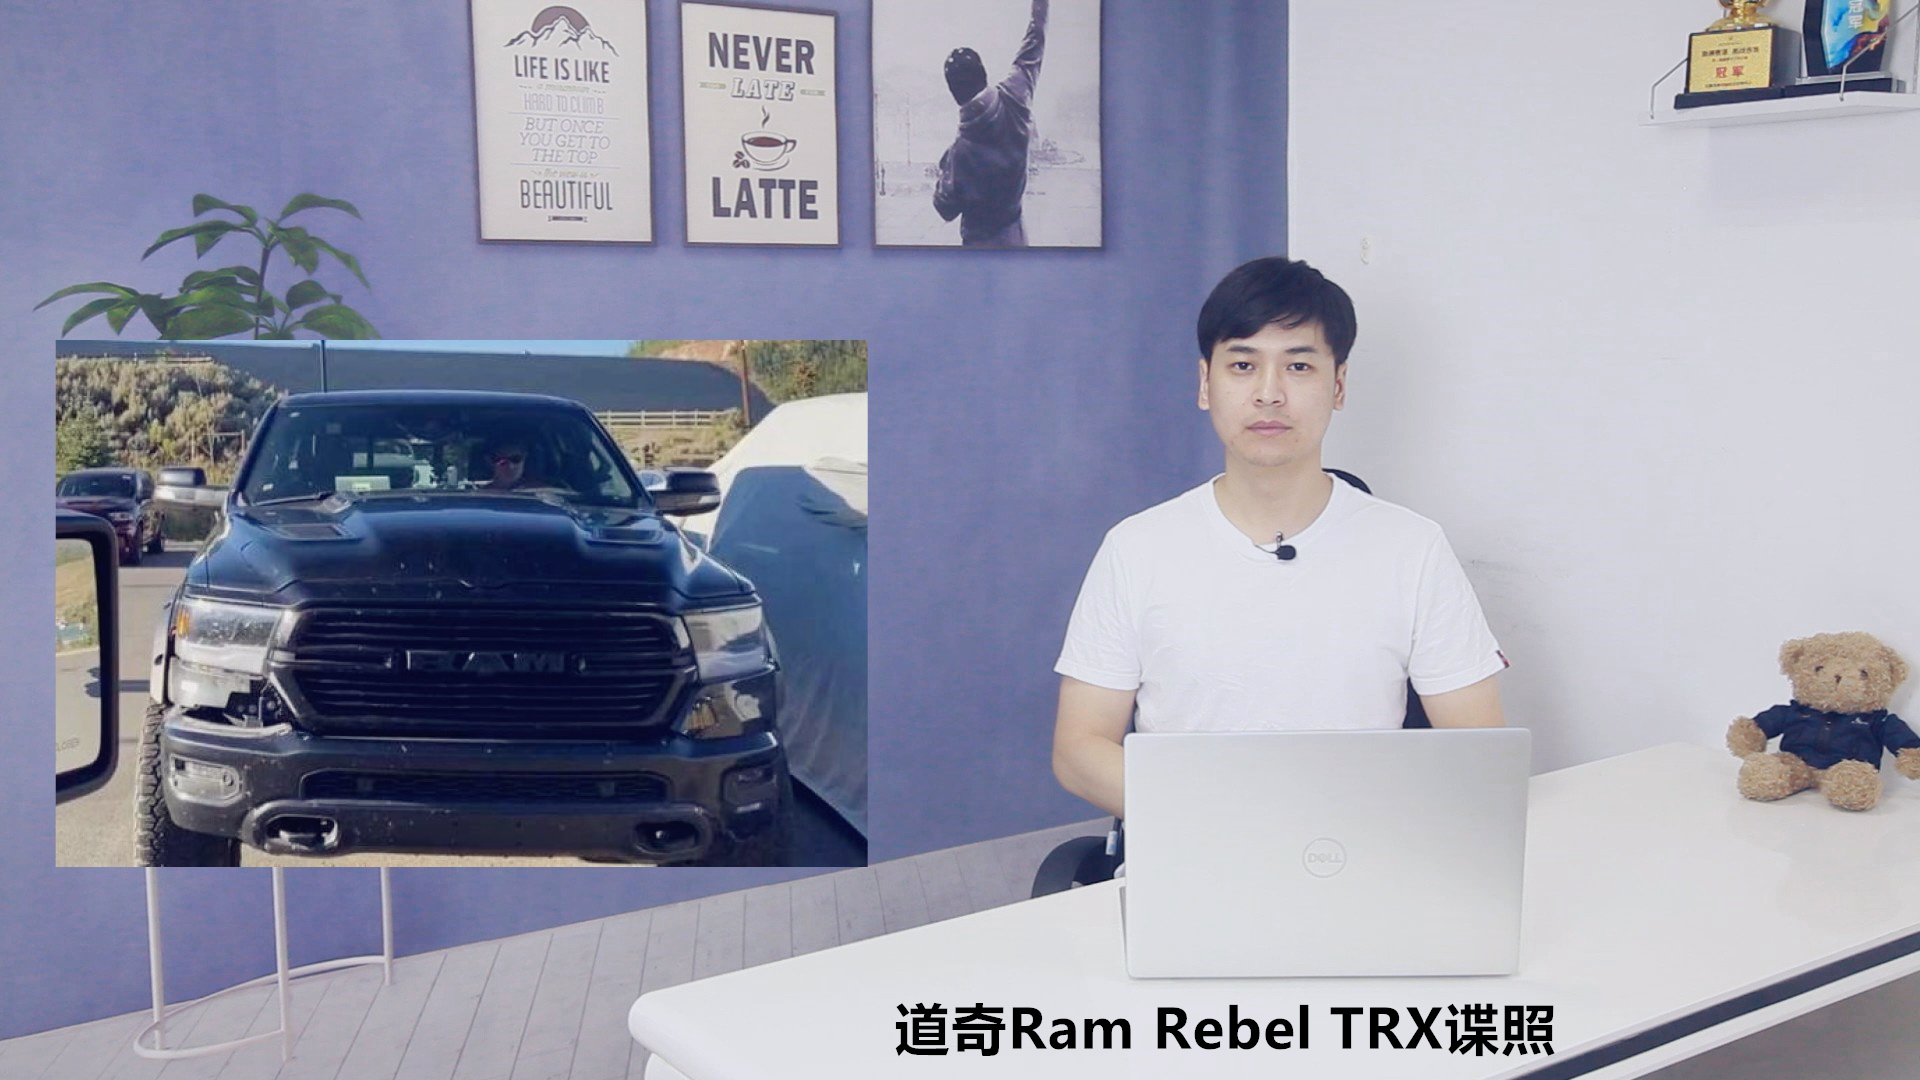 Ram Rebel TRX